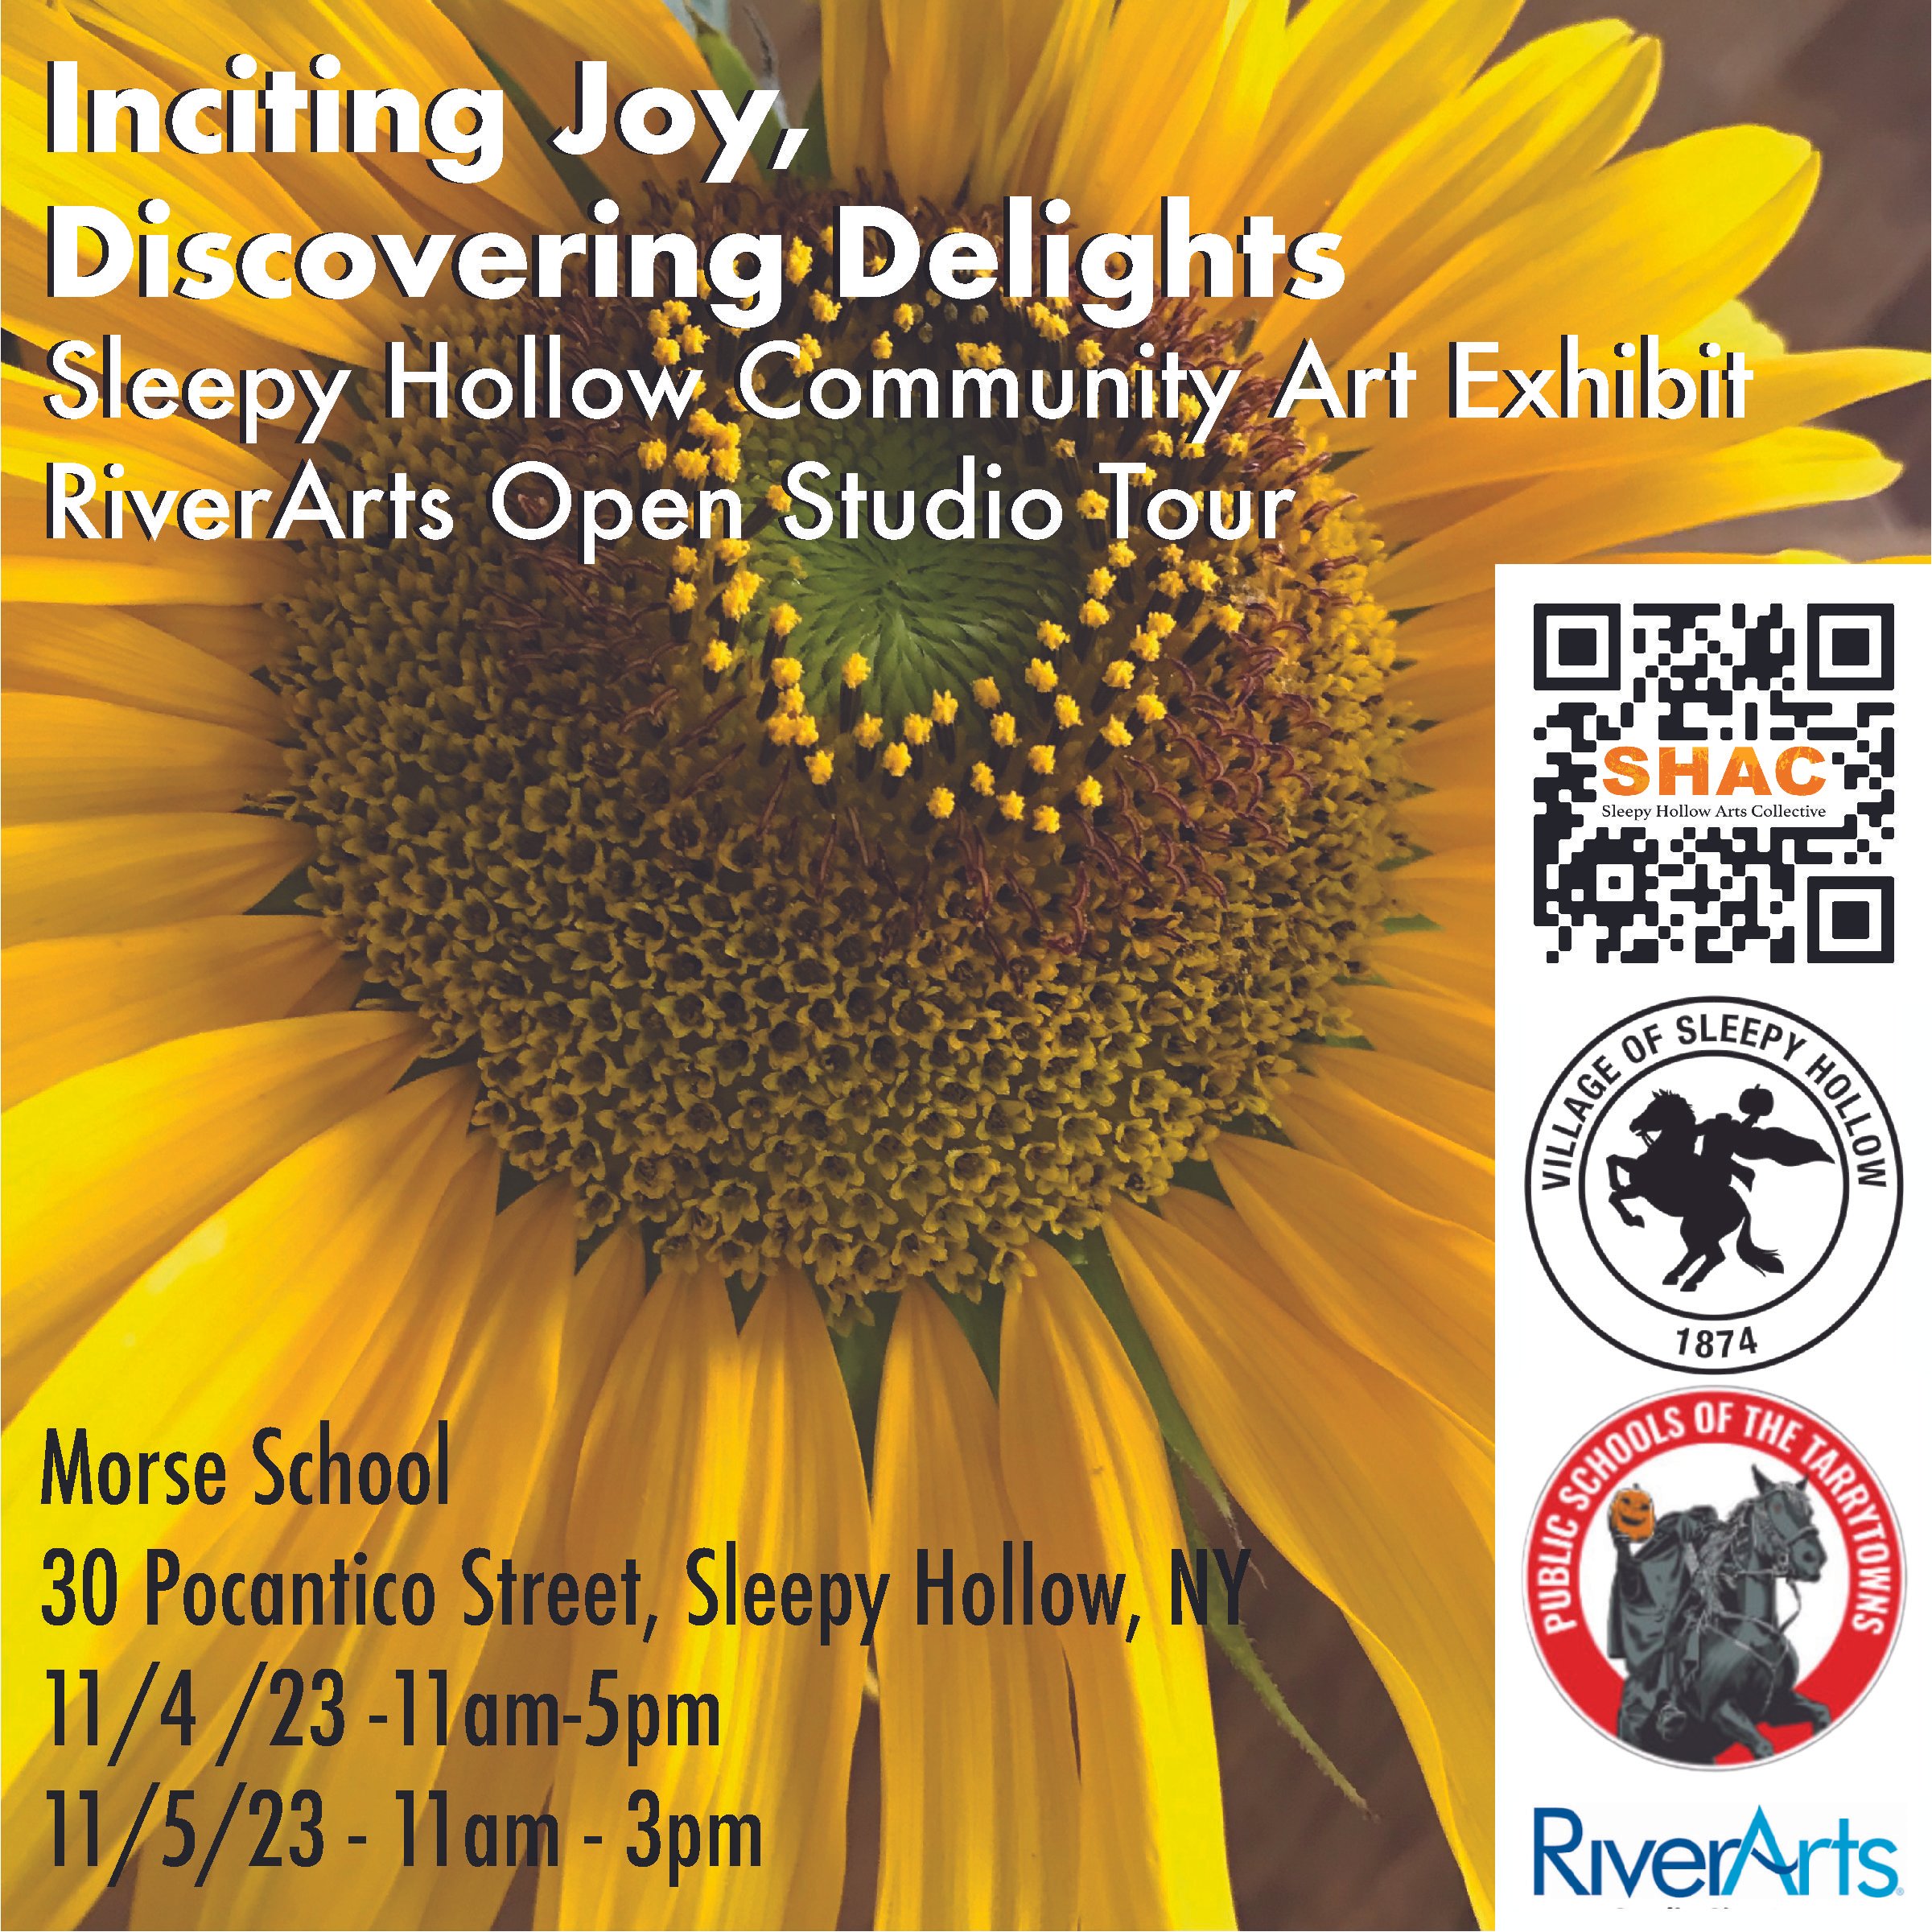 Sleepy Hollow Community Art Exhibit